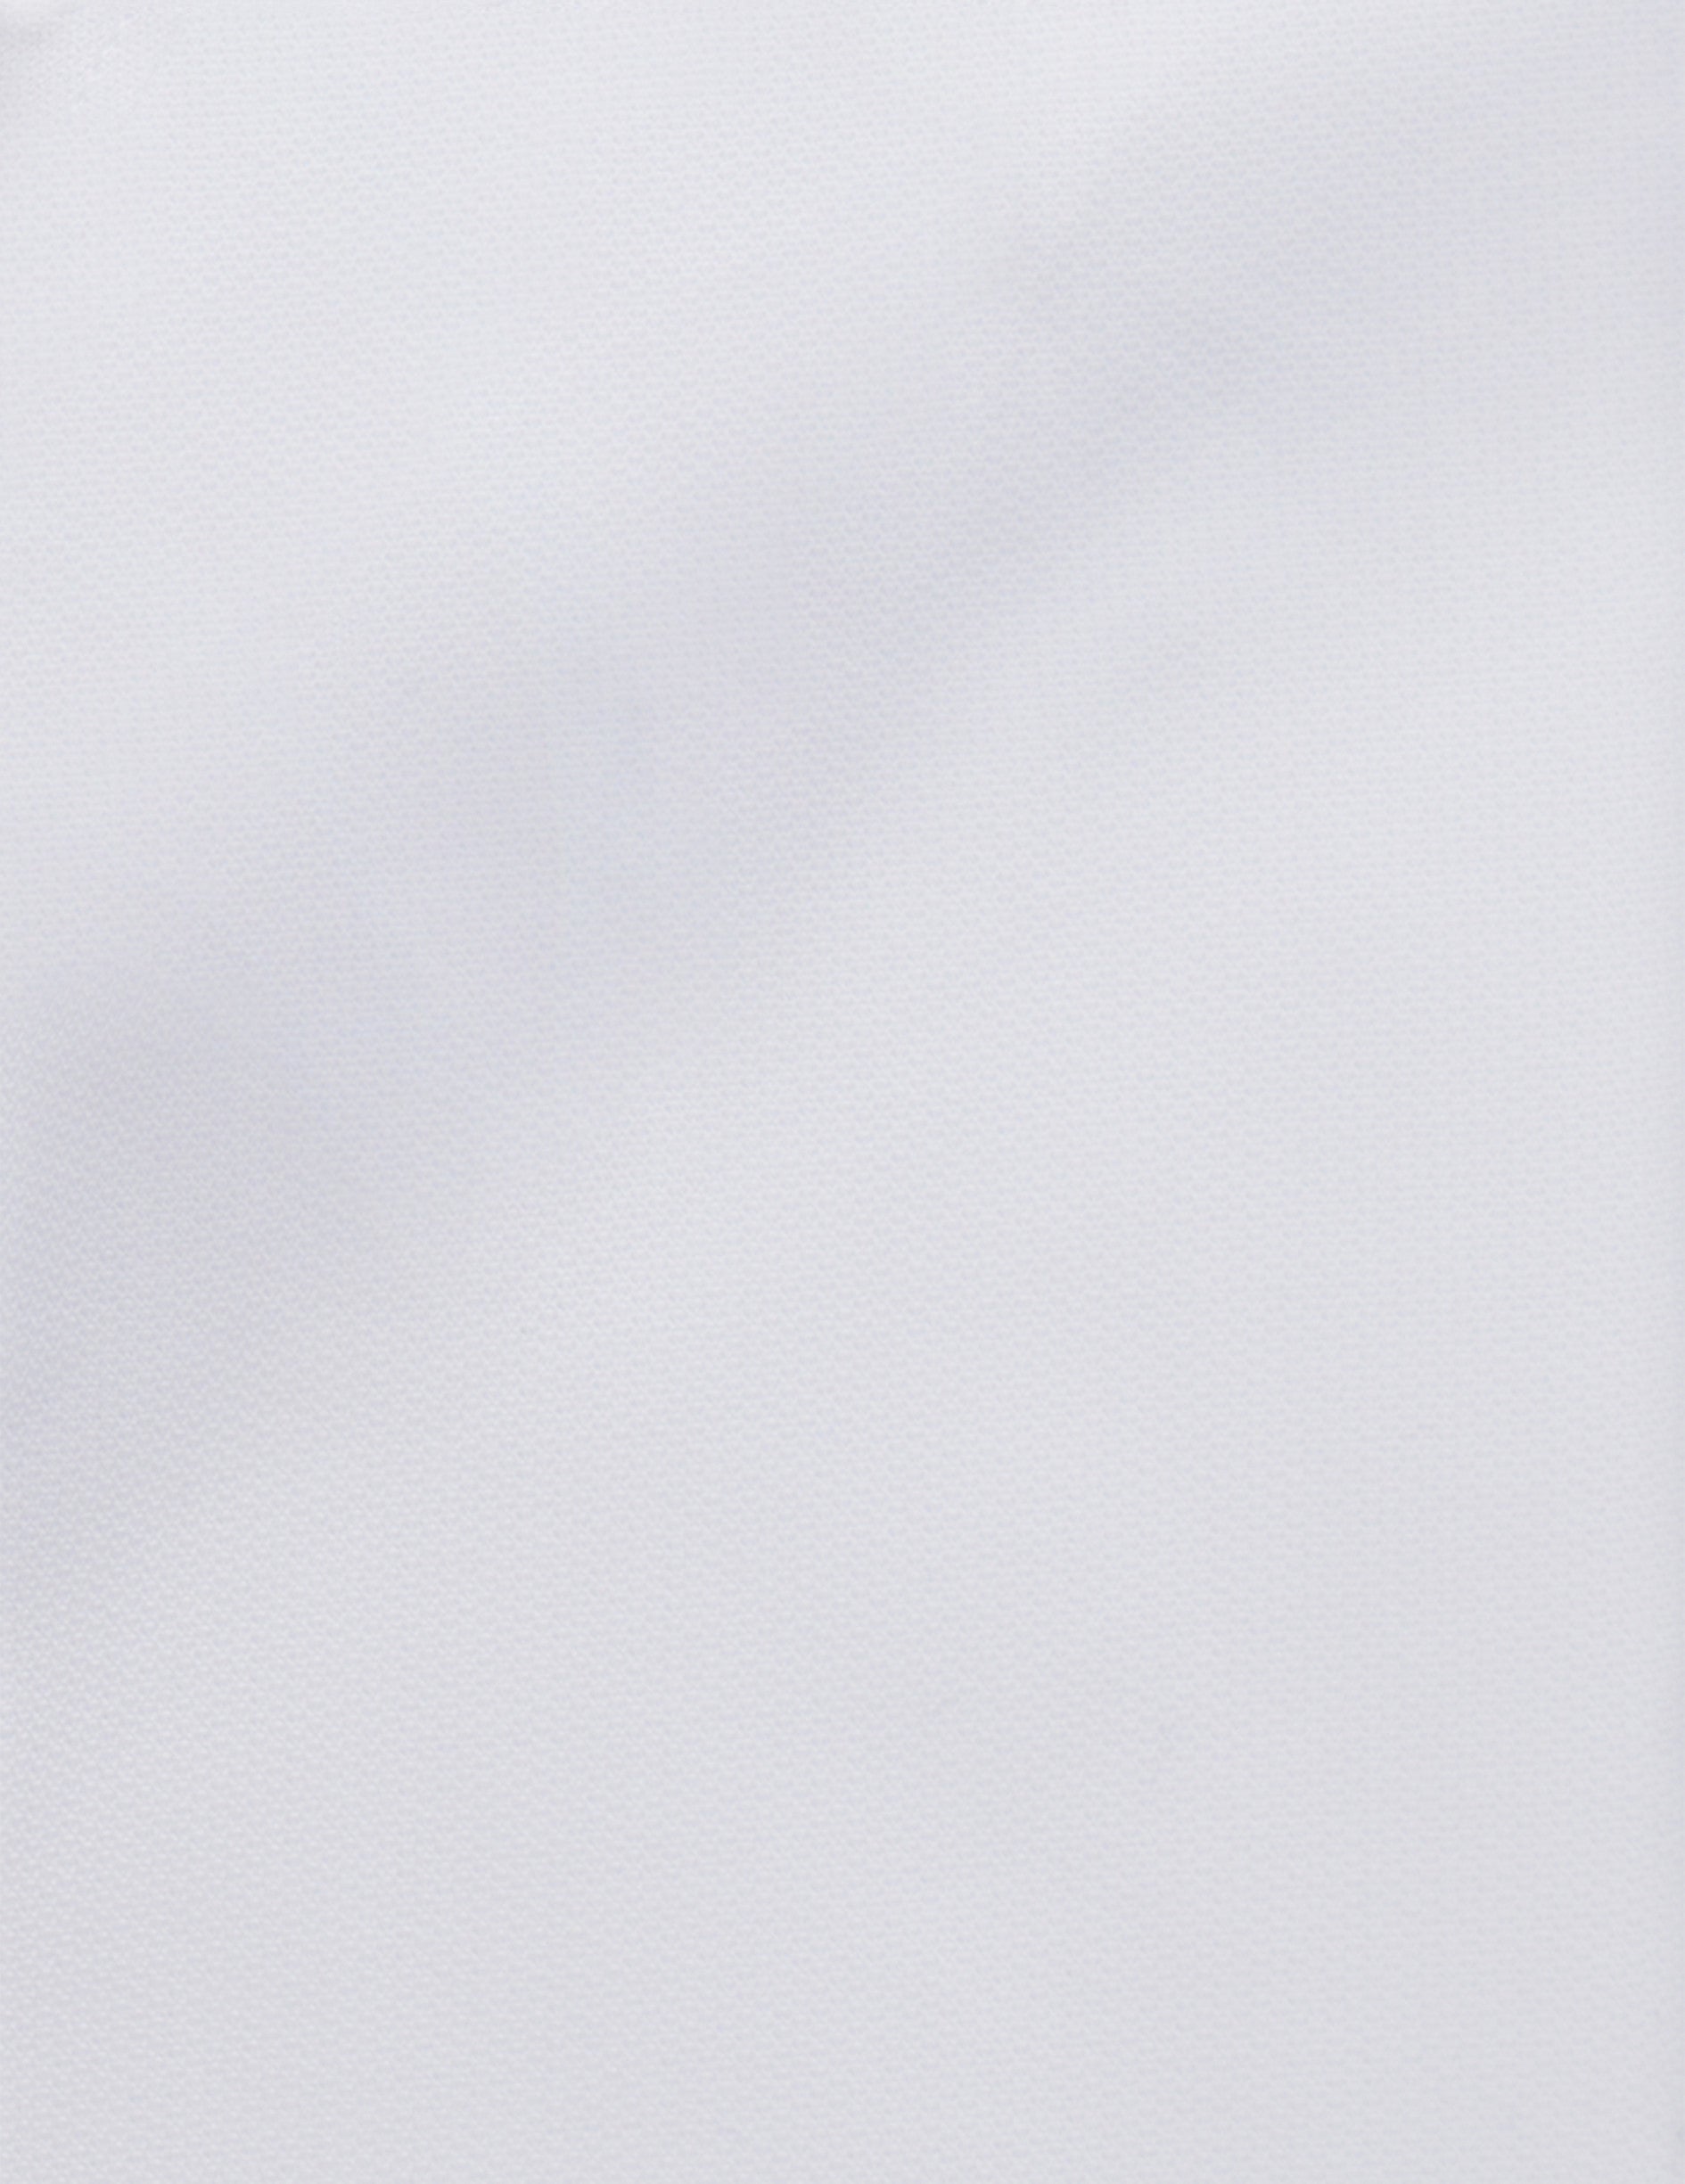 Chemise Semi-ajustée blanche - Façonné - Col Figaret - Poignets Mousquetaires